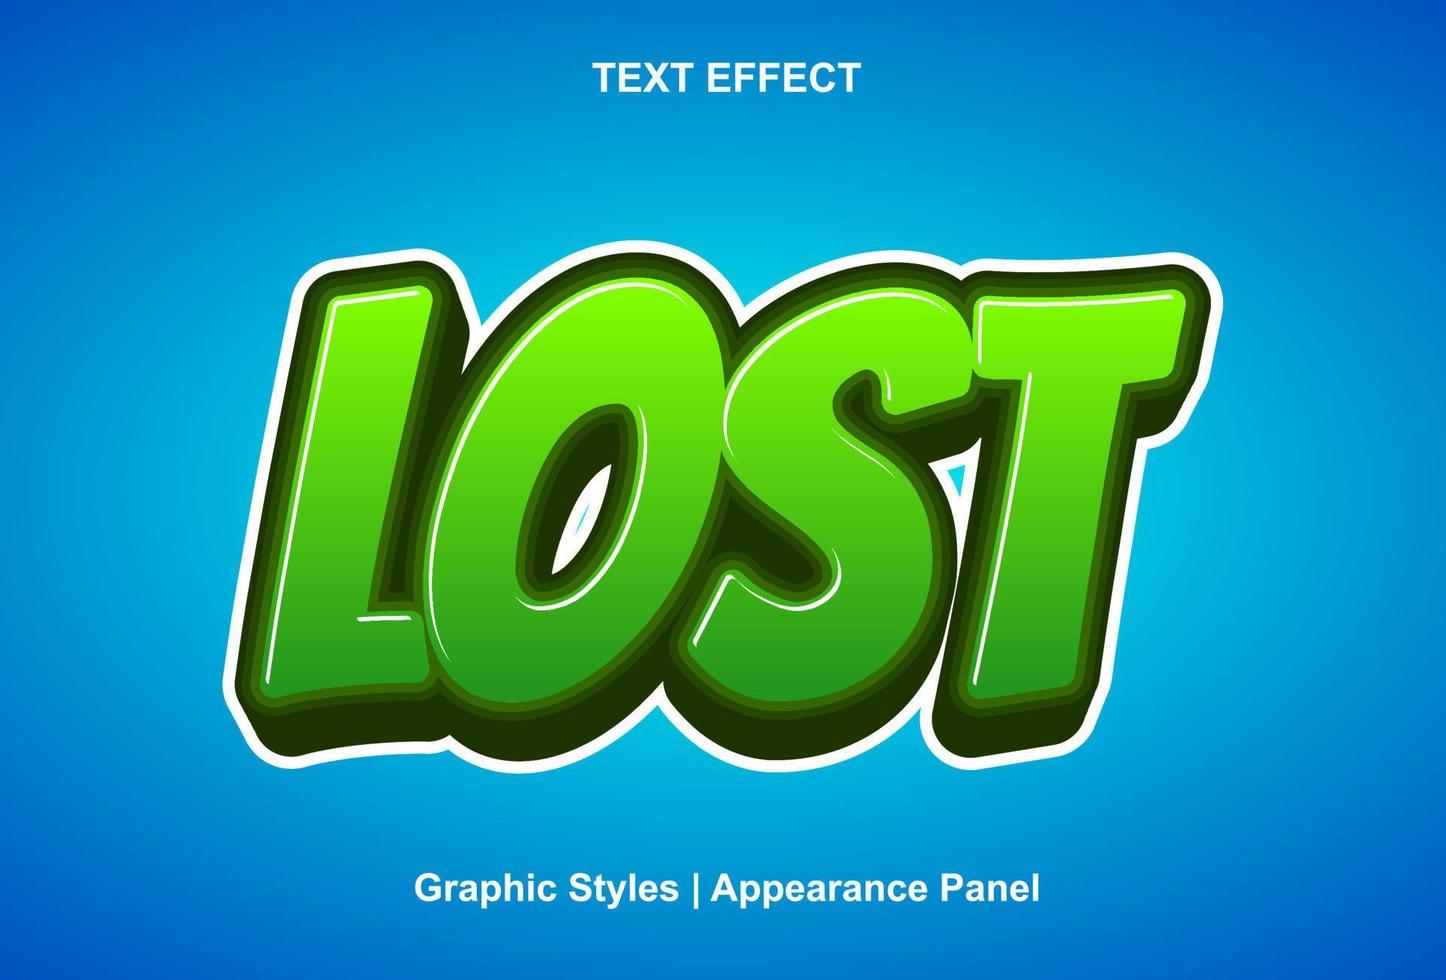 verloren tekst effect met groen kleur 3d stijl. vector